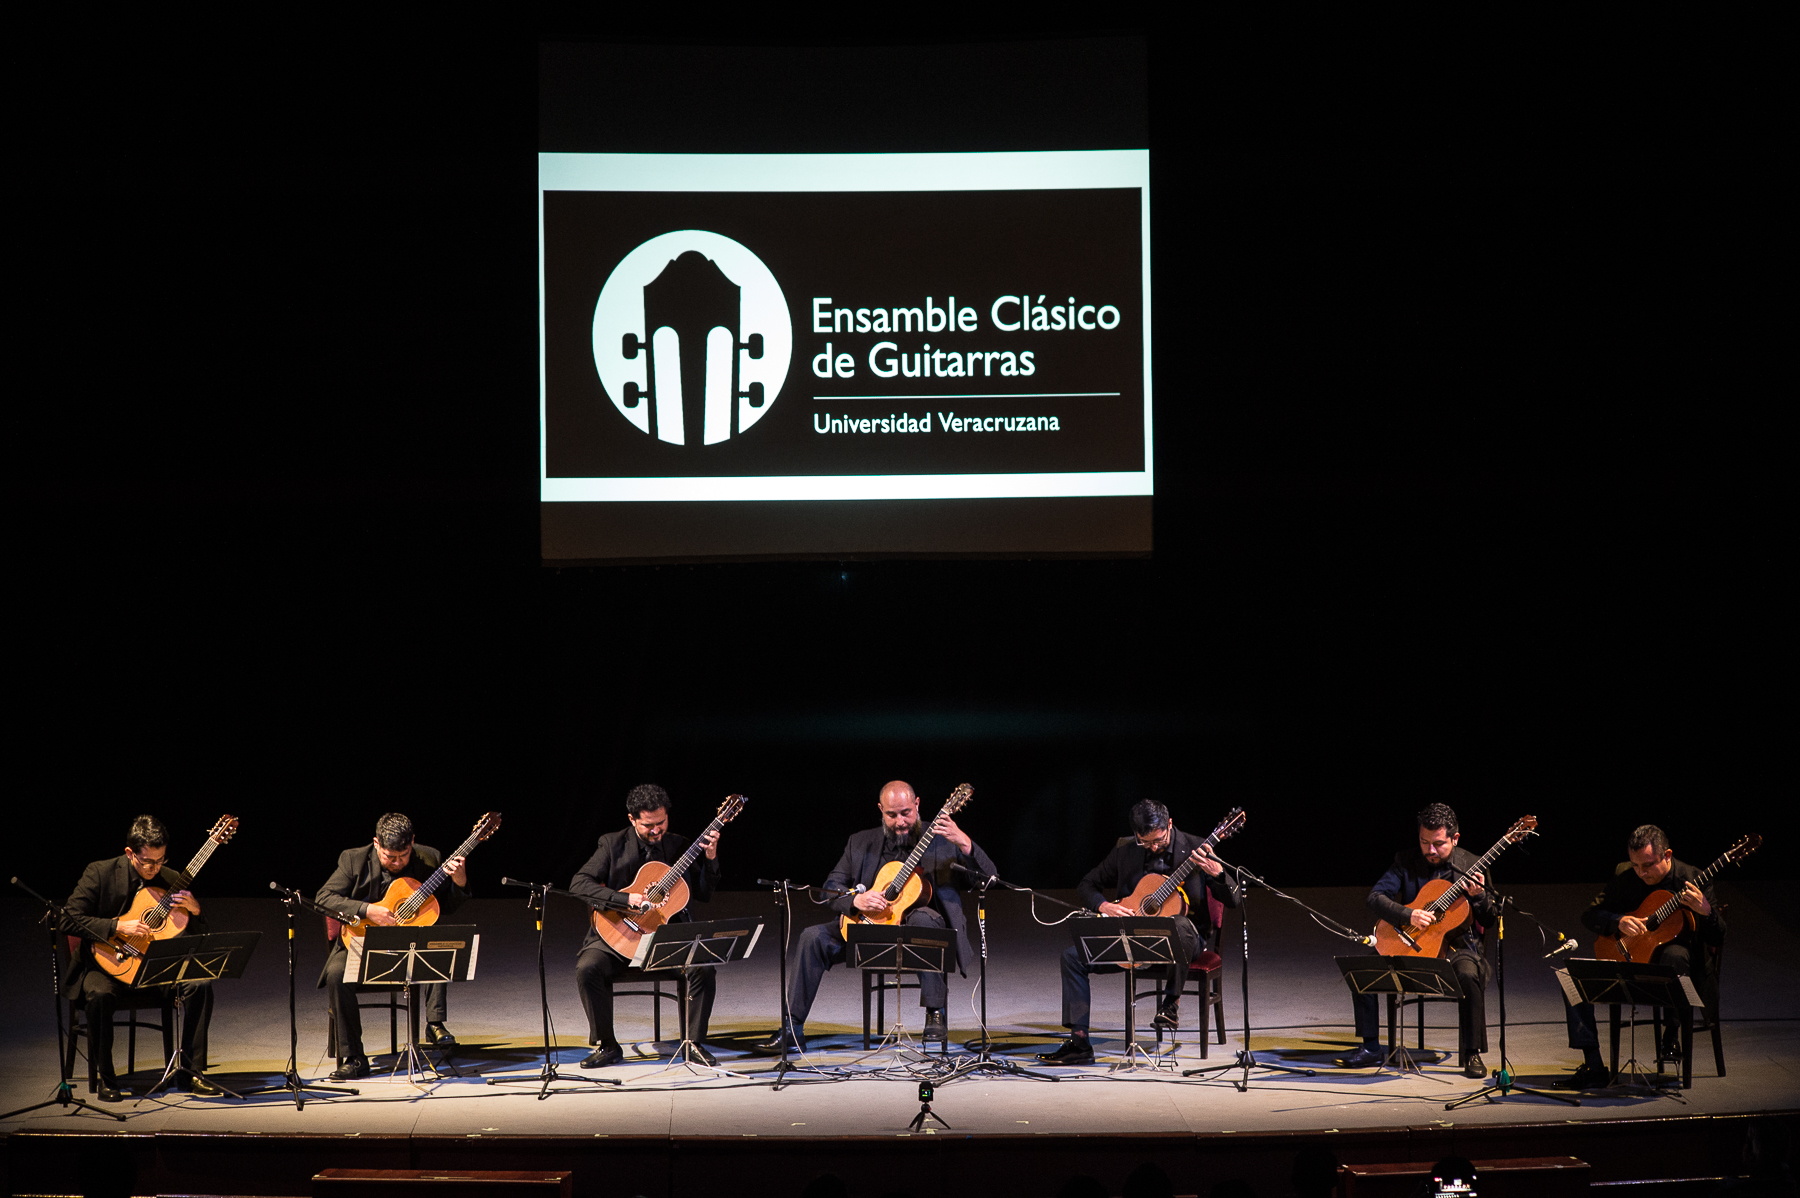 Ensamble Clásico de Guitarras de la Universidad Veracruzana